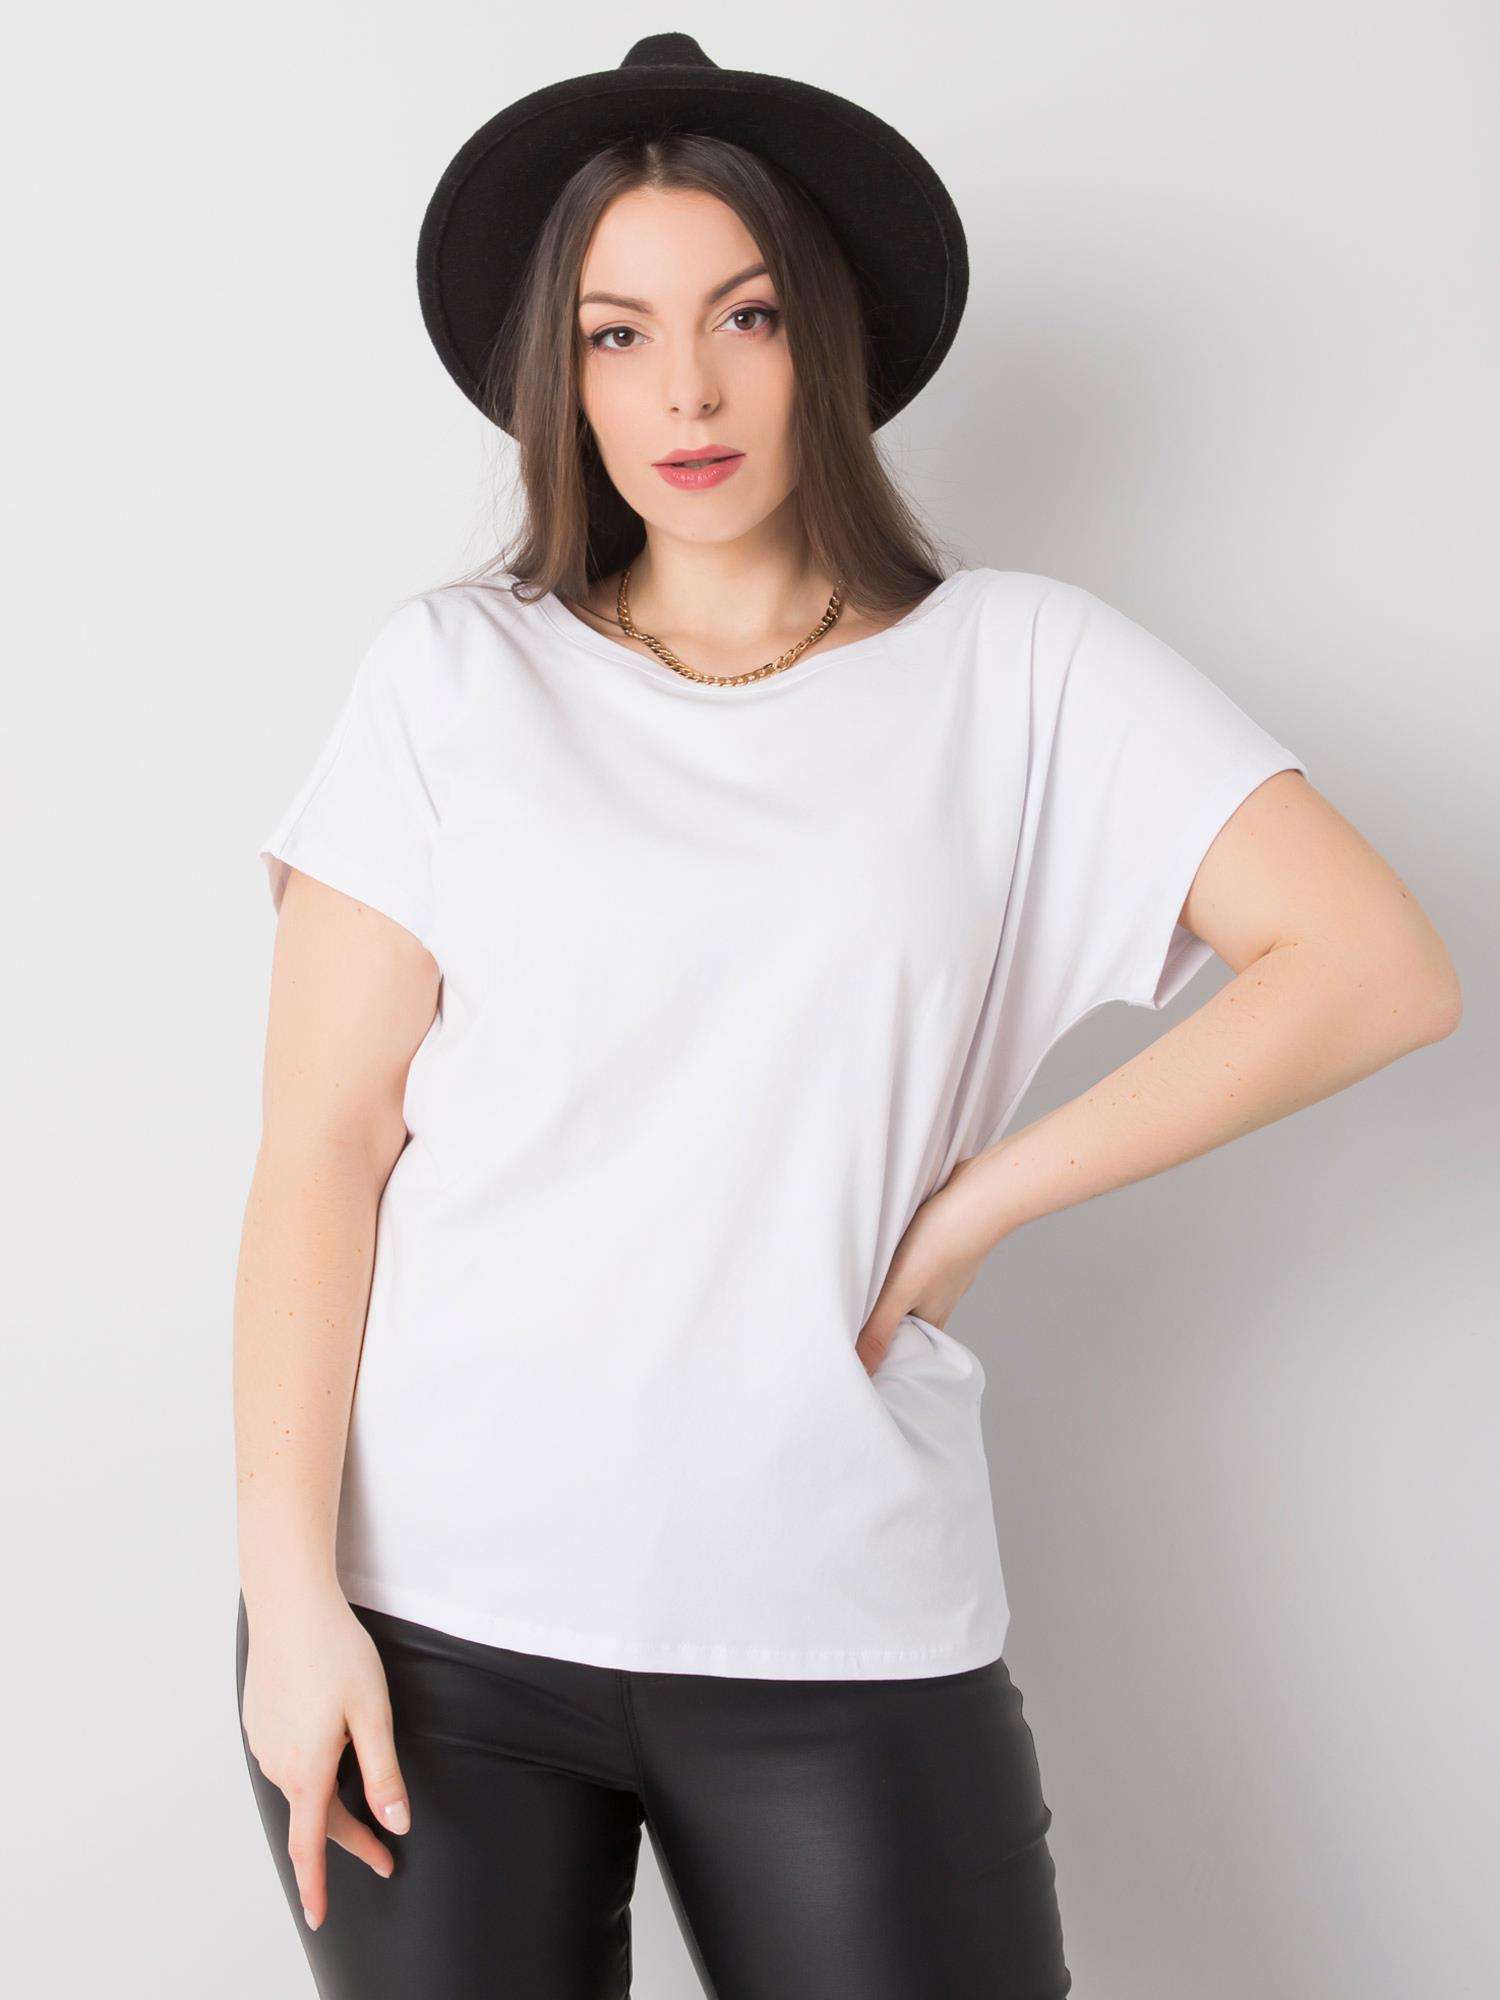 Bílé dámské tričko s výstřihem na zádech -RV-TS-6297.08P-white Velikost: 3XL